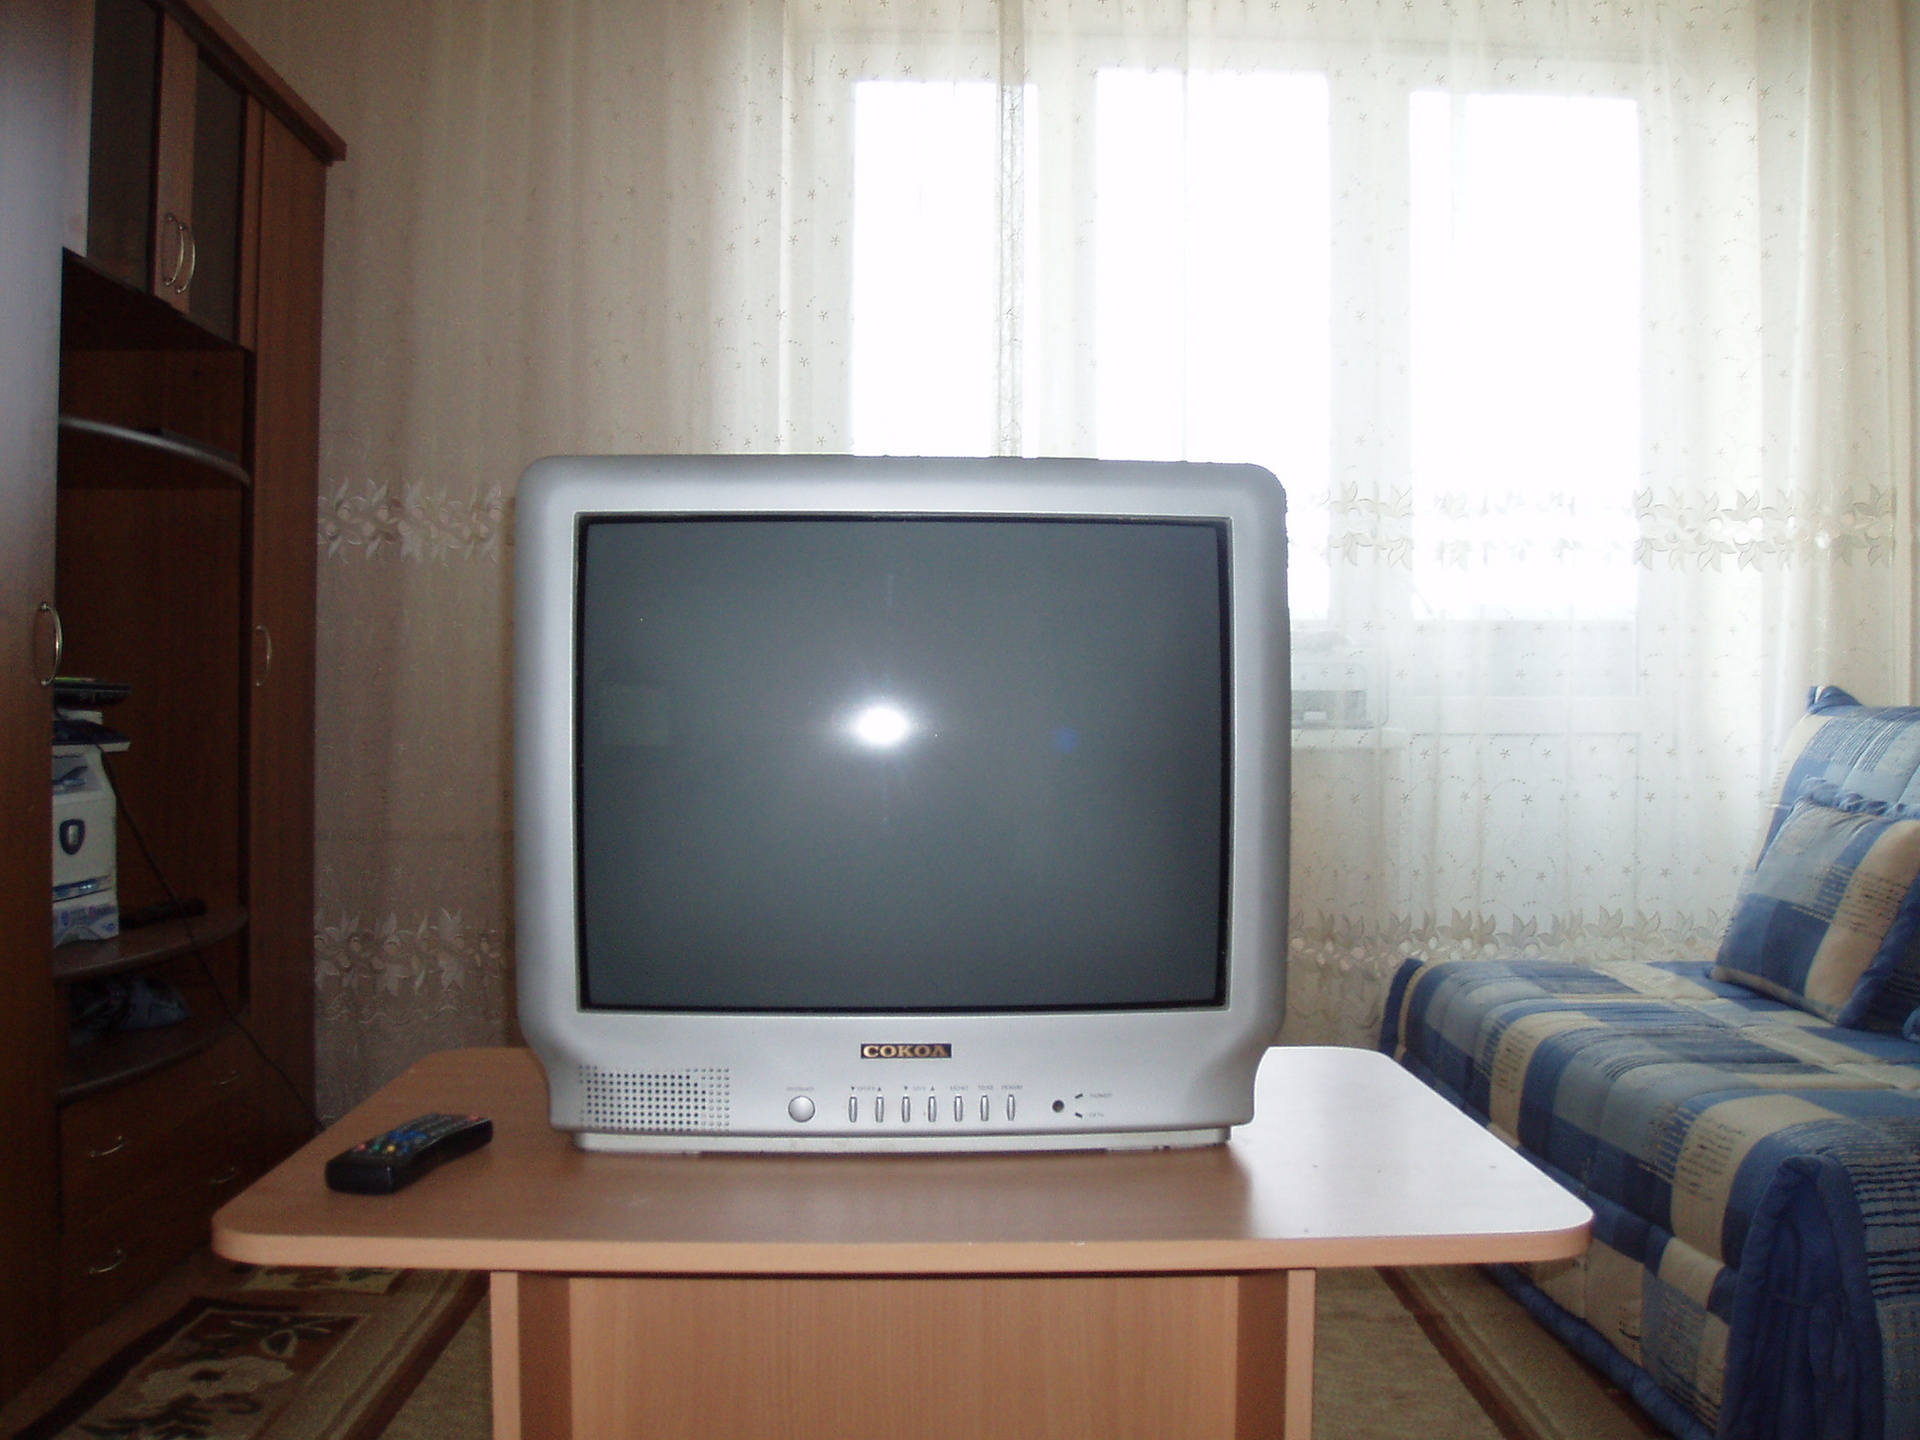 Недорогие телевизоры оренбург. Бэушные телевизоры в Оренбурге. Недорогой телевизор картинки. Телевизор рассвет 307. Олх Актау телевизоры б у недорого.